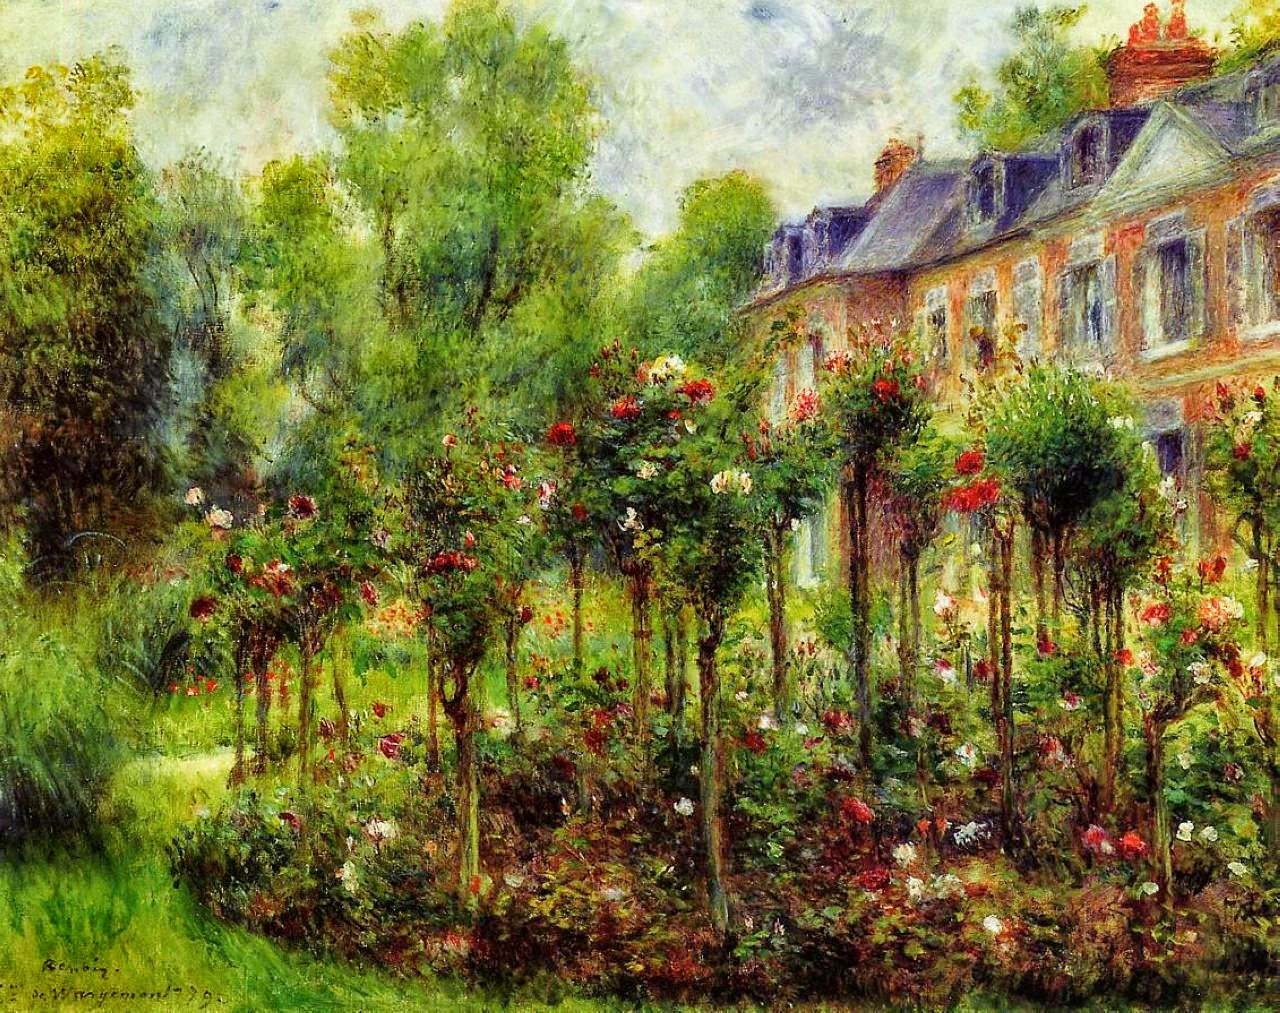 Pierre+Auguste+Renoir-1841-1-19 (265).jpg